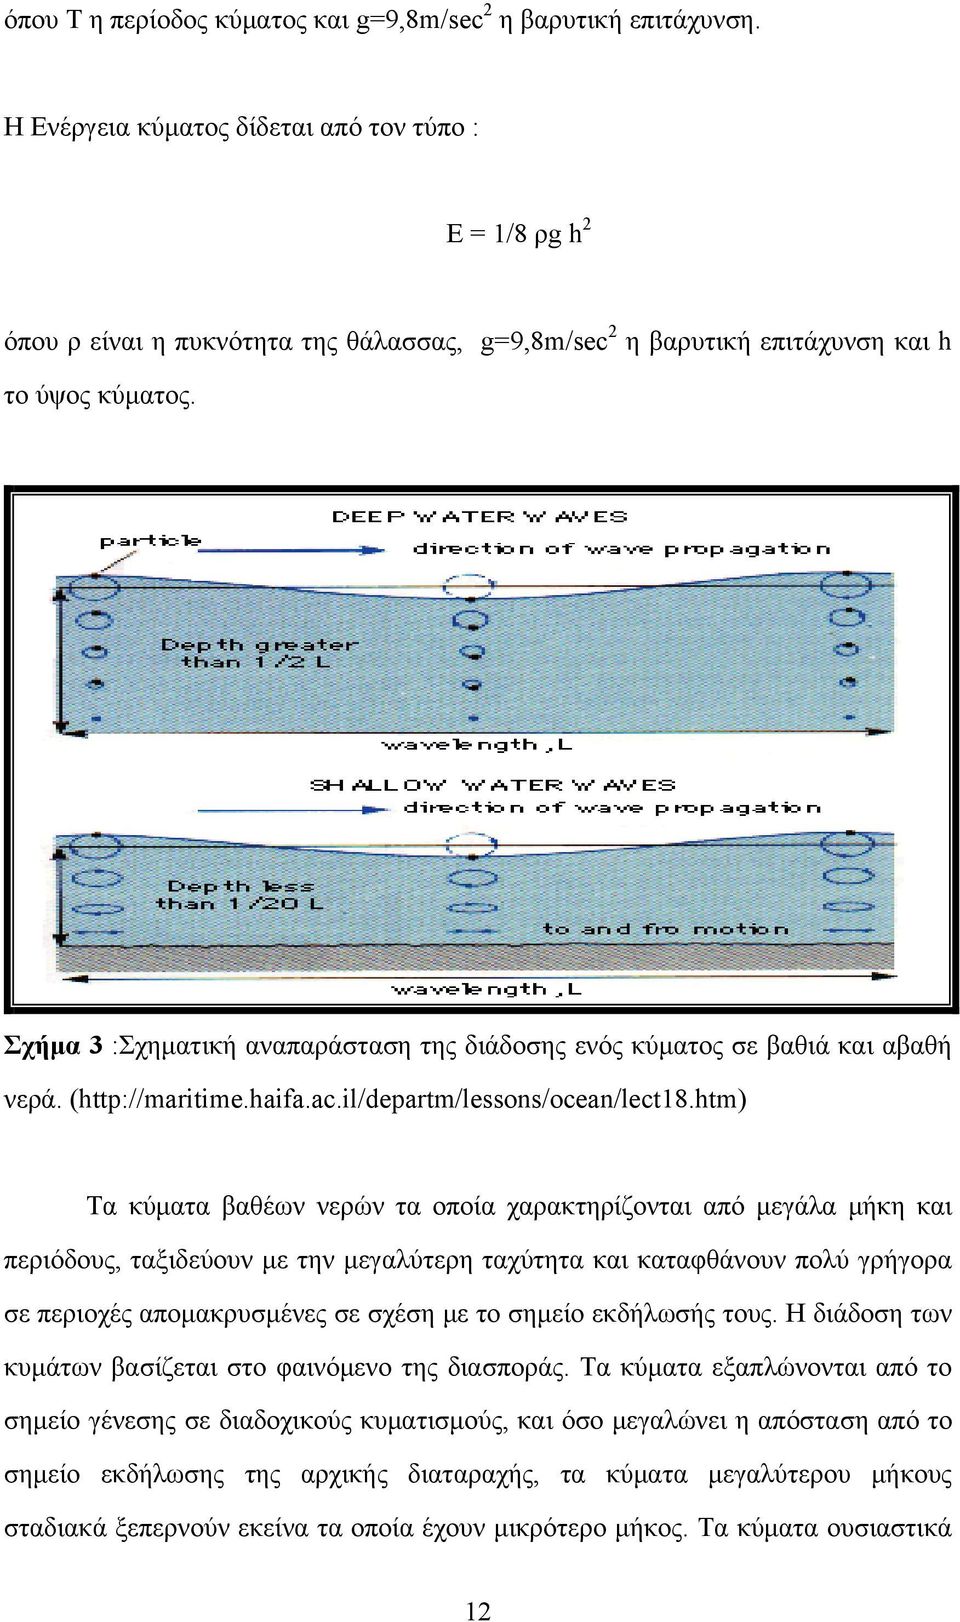 Σχήμα 3 :Σχηματική αναπαράσταση της διάδοσης ενός κύματος σε βαθιά και αβαθή νερά. (http://maritime.haifa.ac.il/departm/lessons/ocean/lect18.